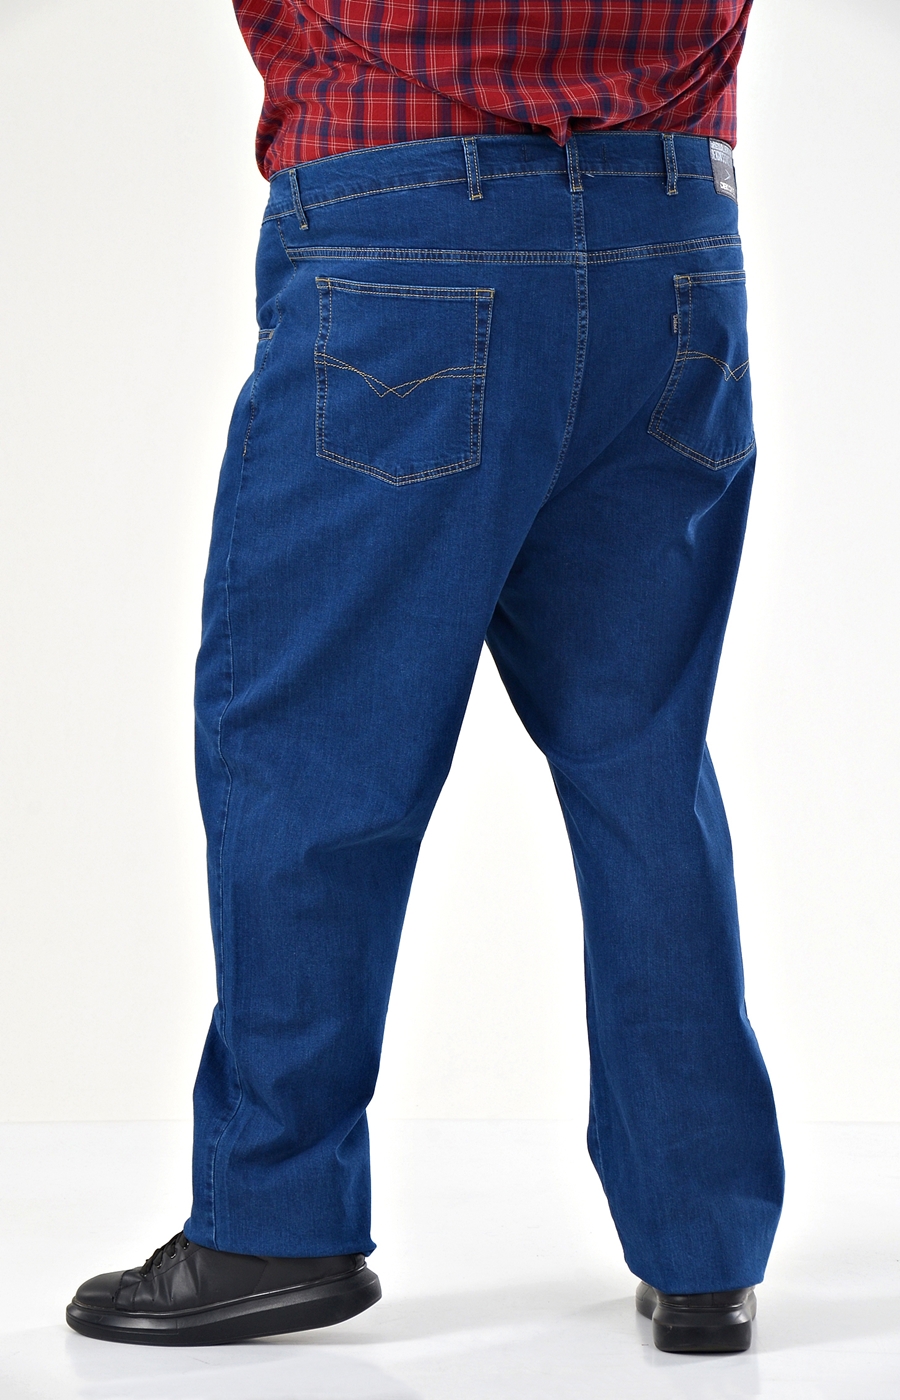 Модель 507 джинсы Деконс большого размера